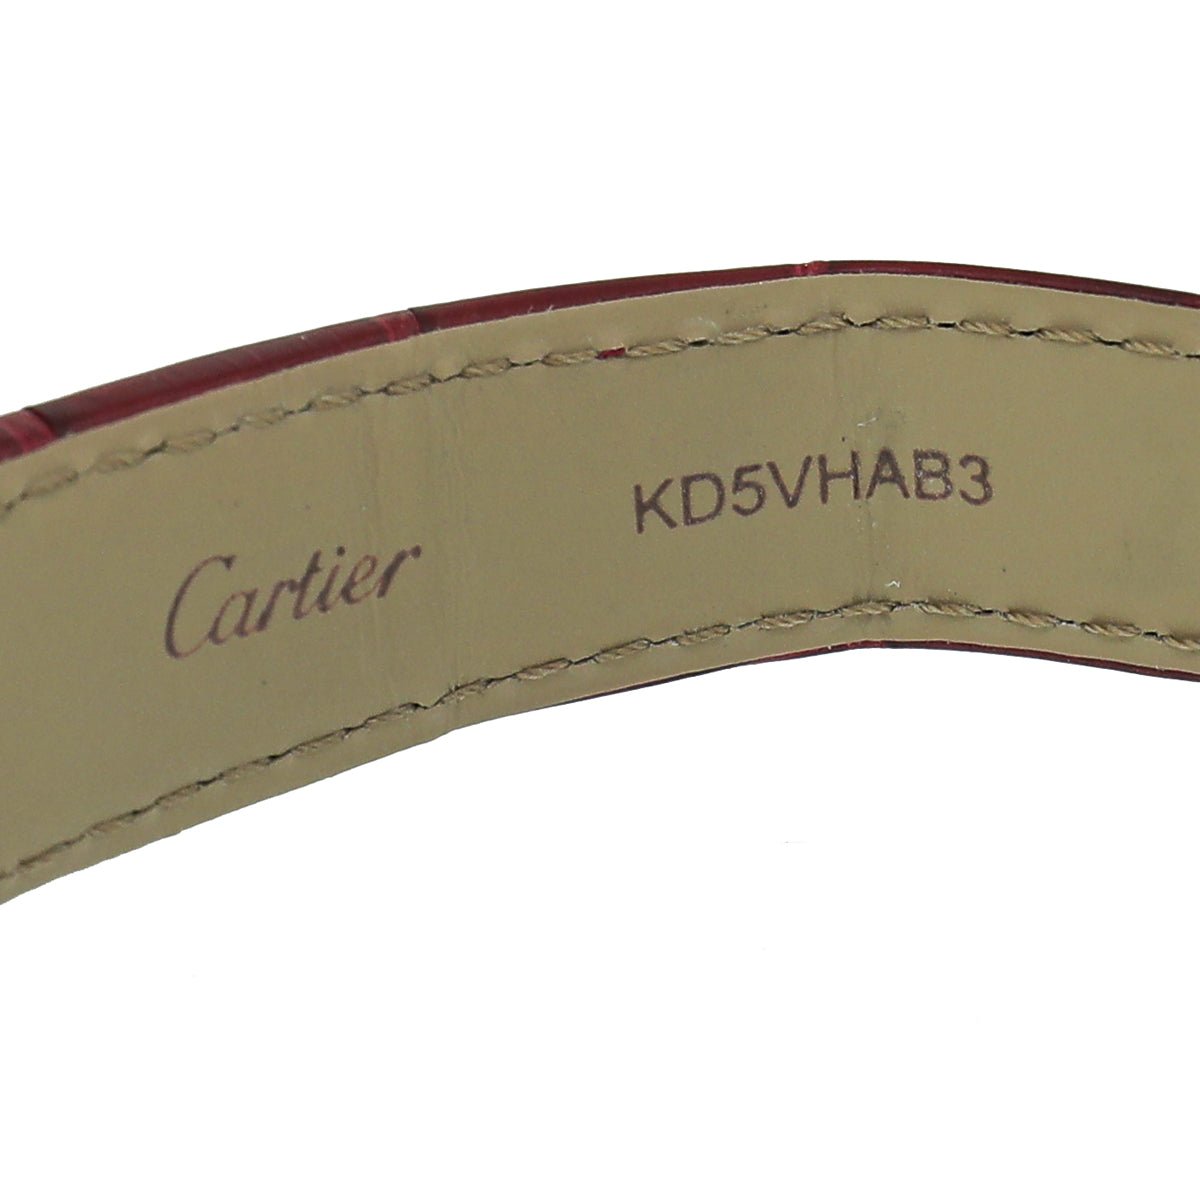 Cartier - Cartier 18K Rose Gold Case Diamond Medium Model Mechanical Movement Tortue Watch | The Closet